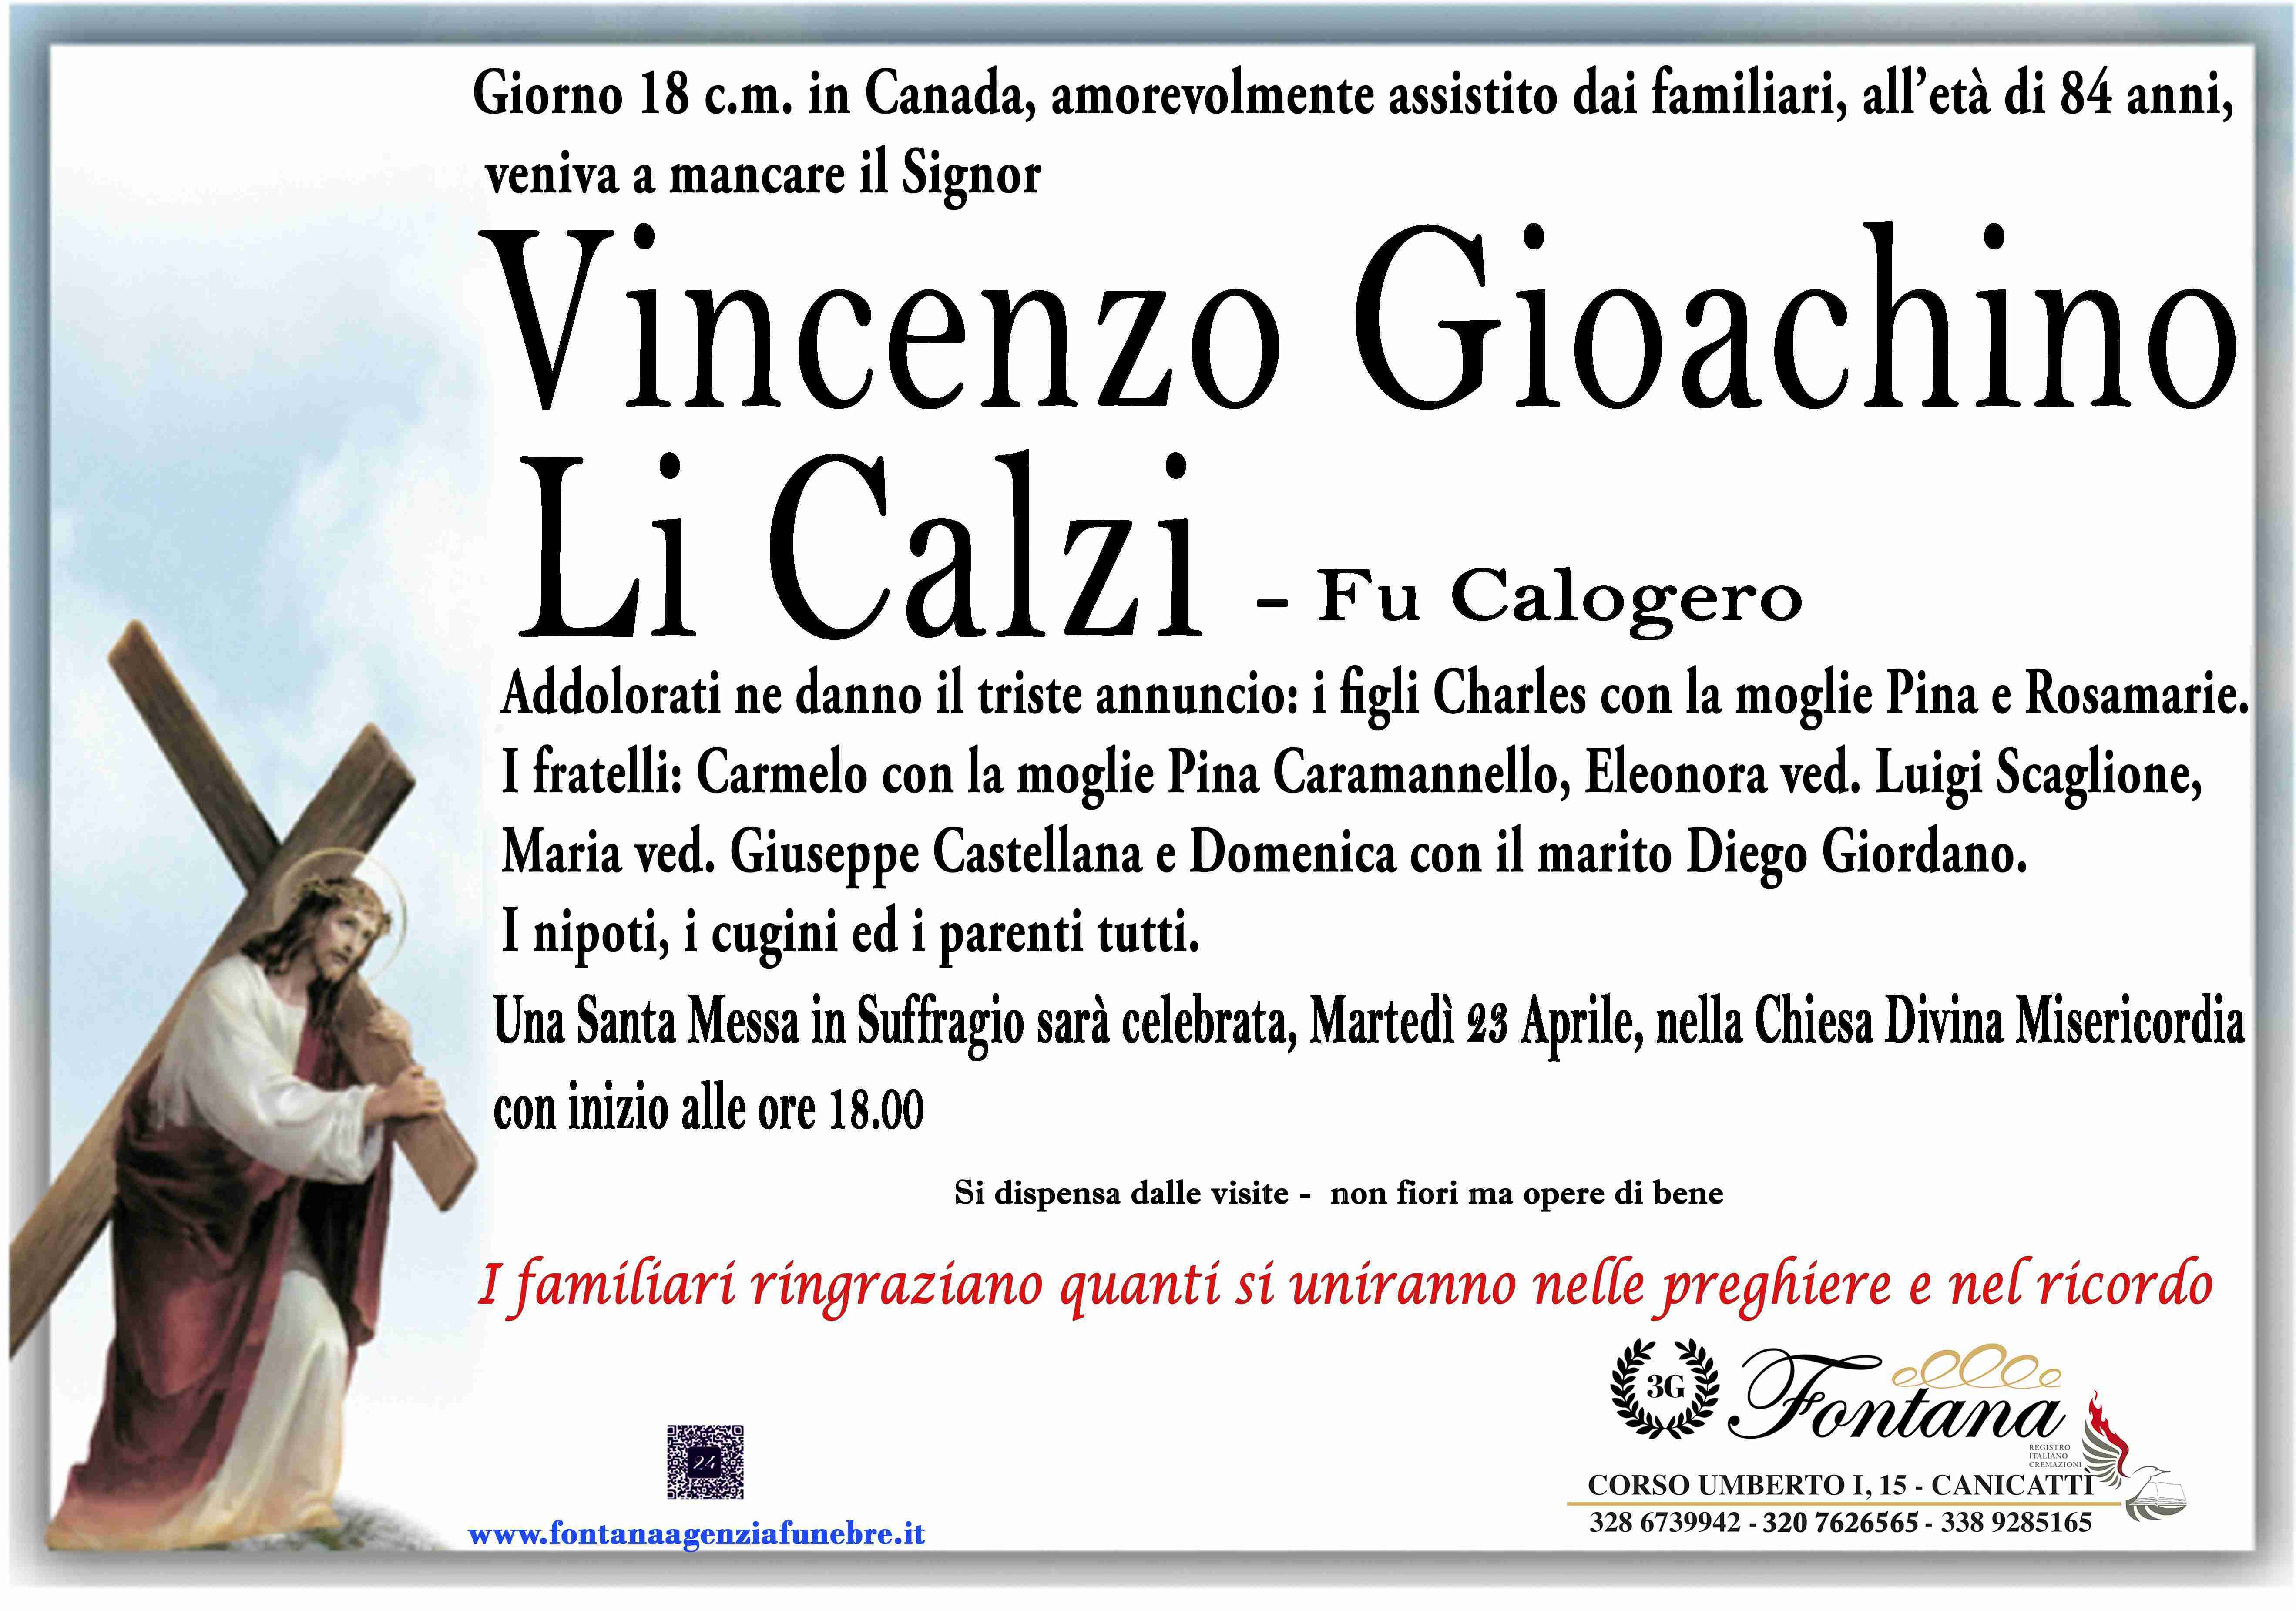 Vincenzo Gioachino Li Calzi